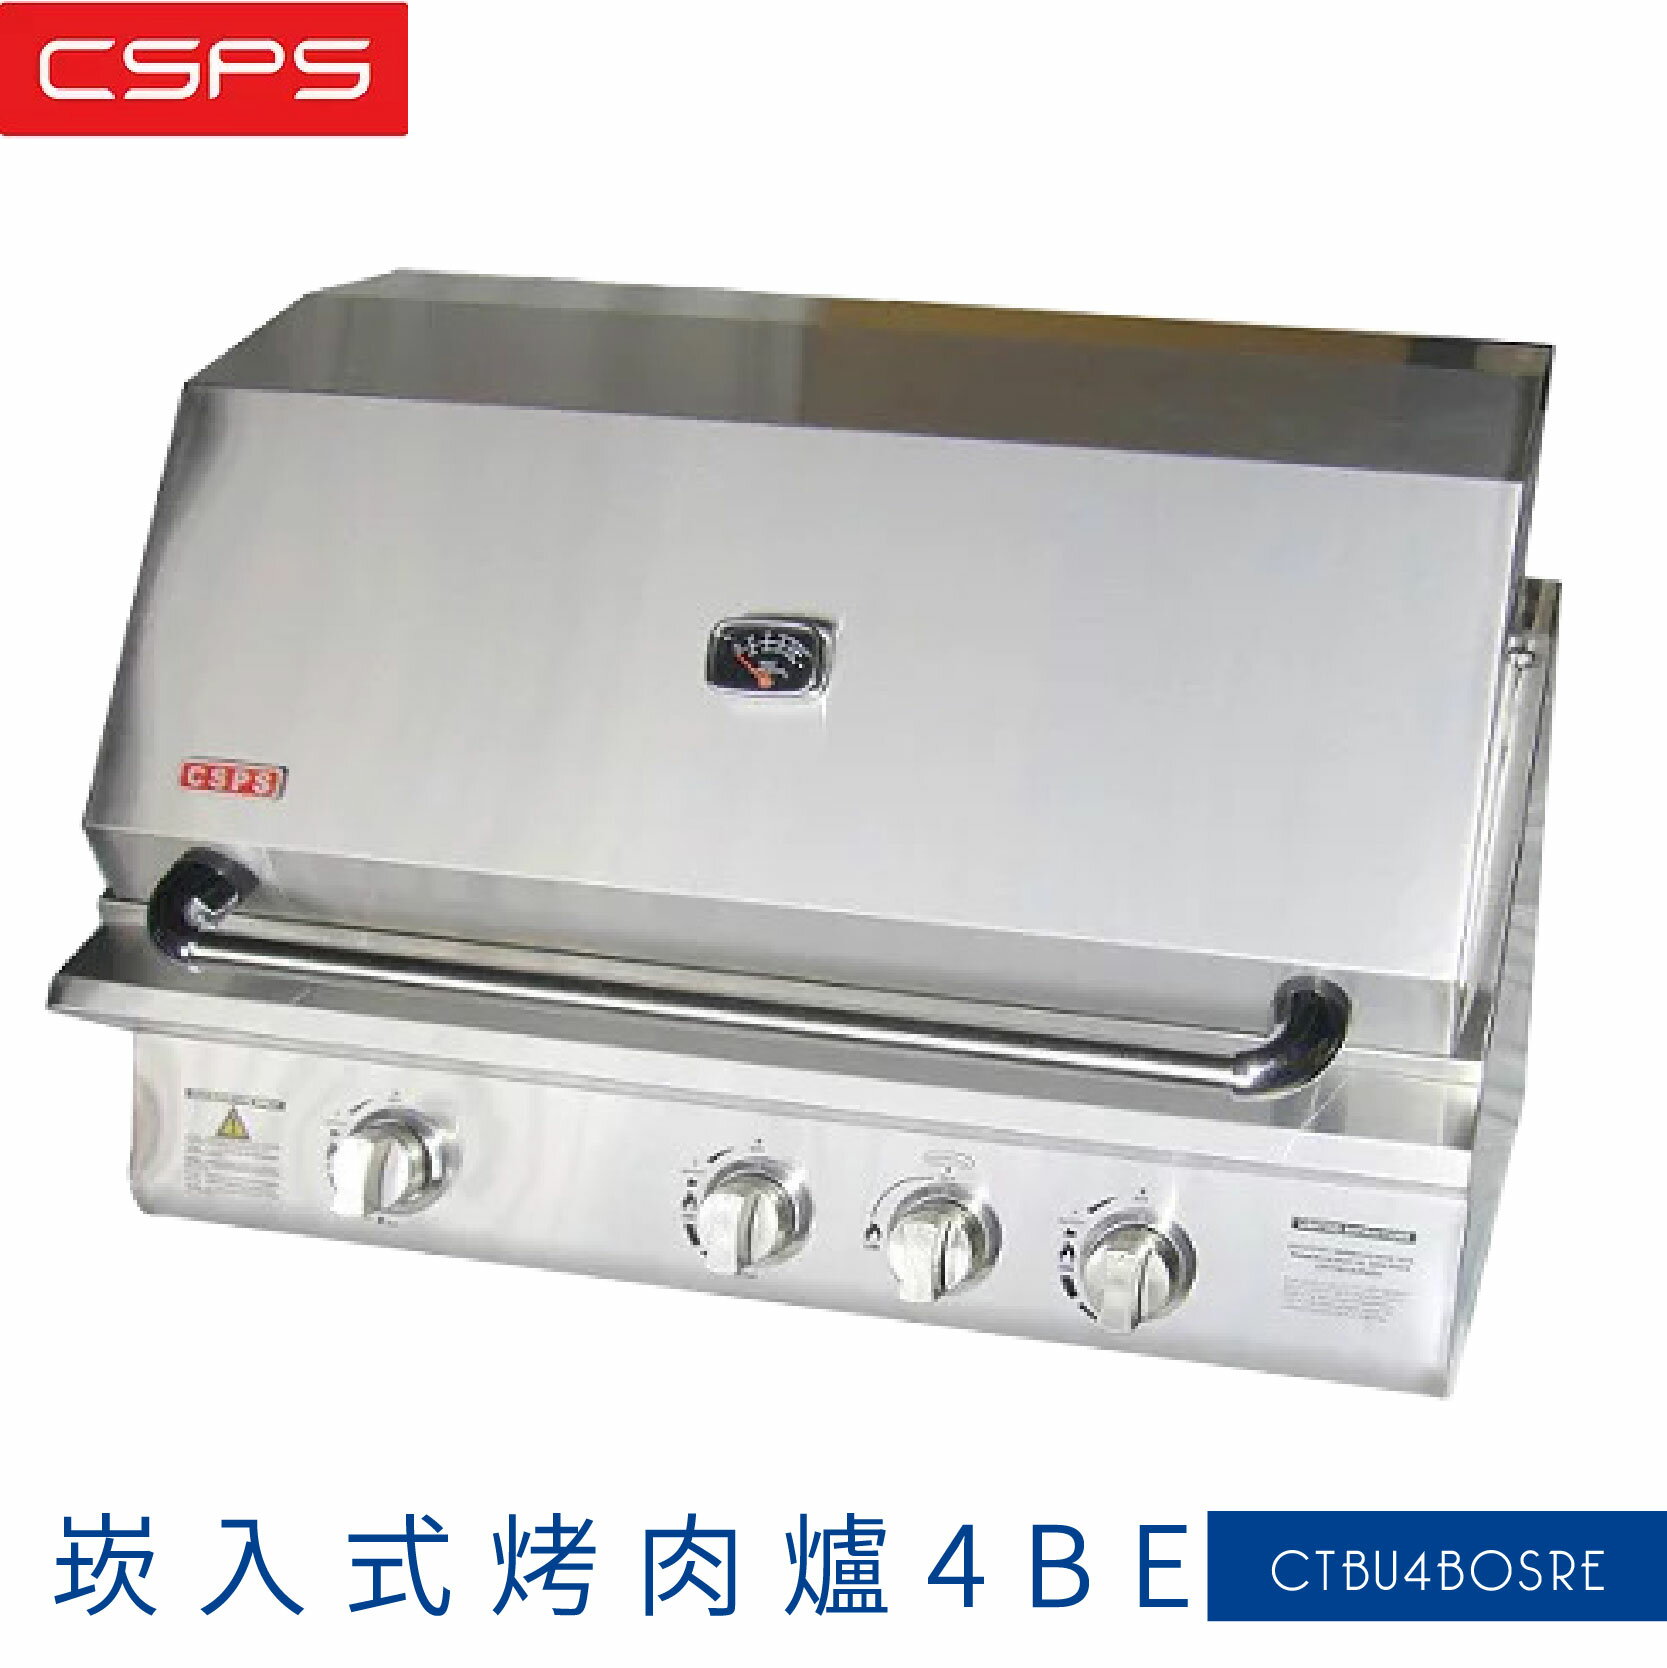 【品質NO.1】嵌入式烤肉爐4BE 304不銹鋼絲面材質 適用6-20人 餐廳 烤肉 BBQ 烤雞 紅外線、雞叉裝置